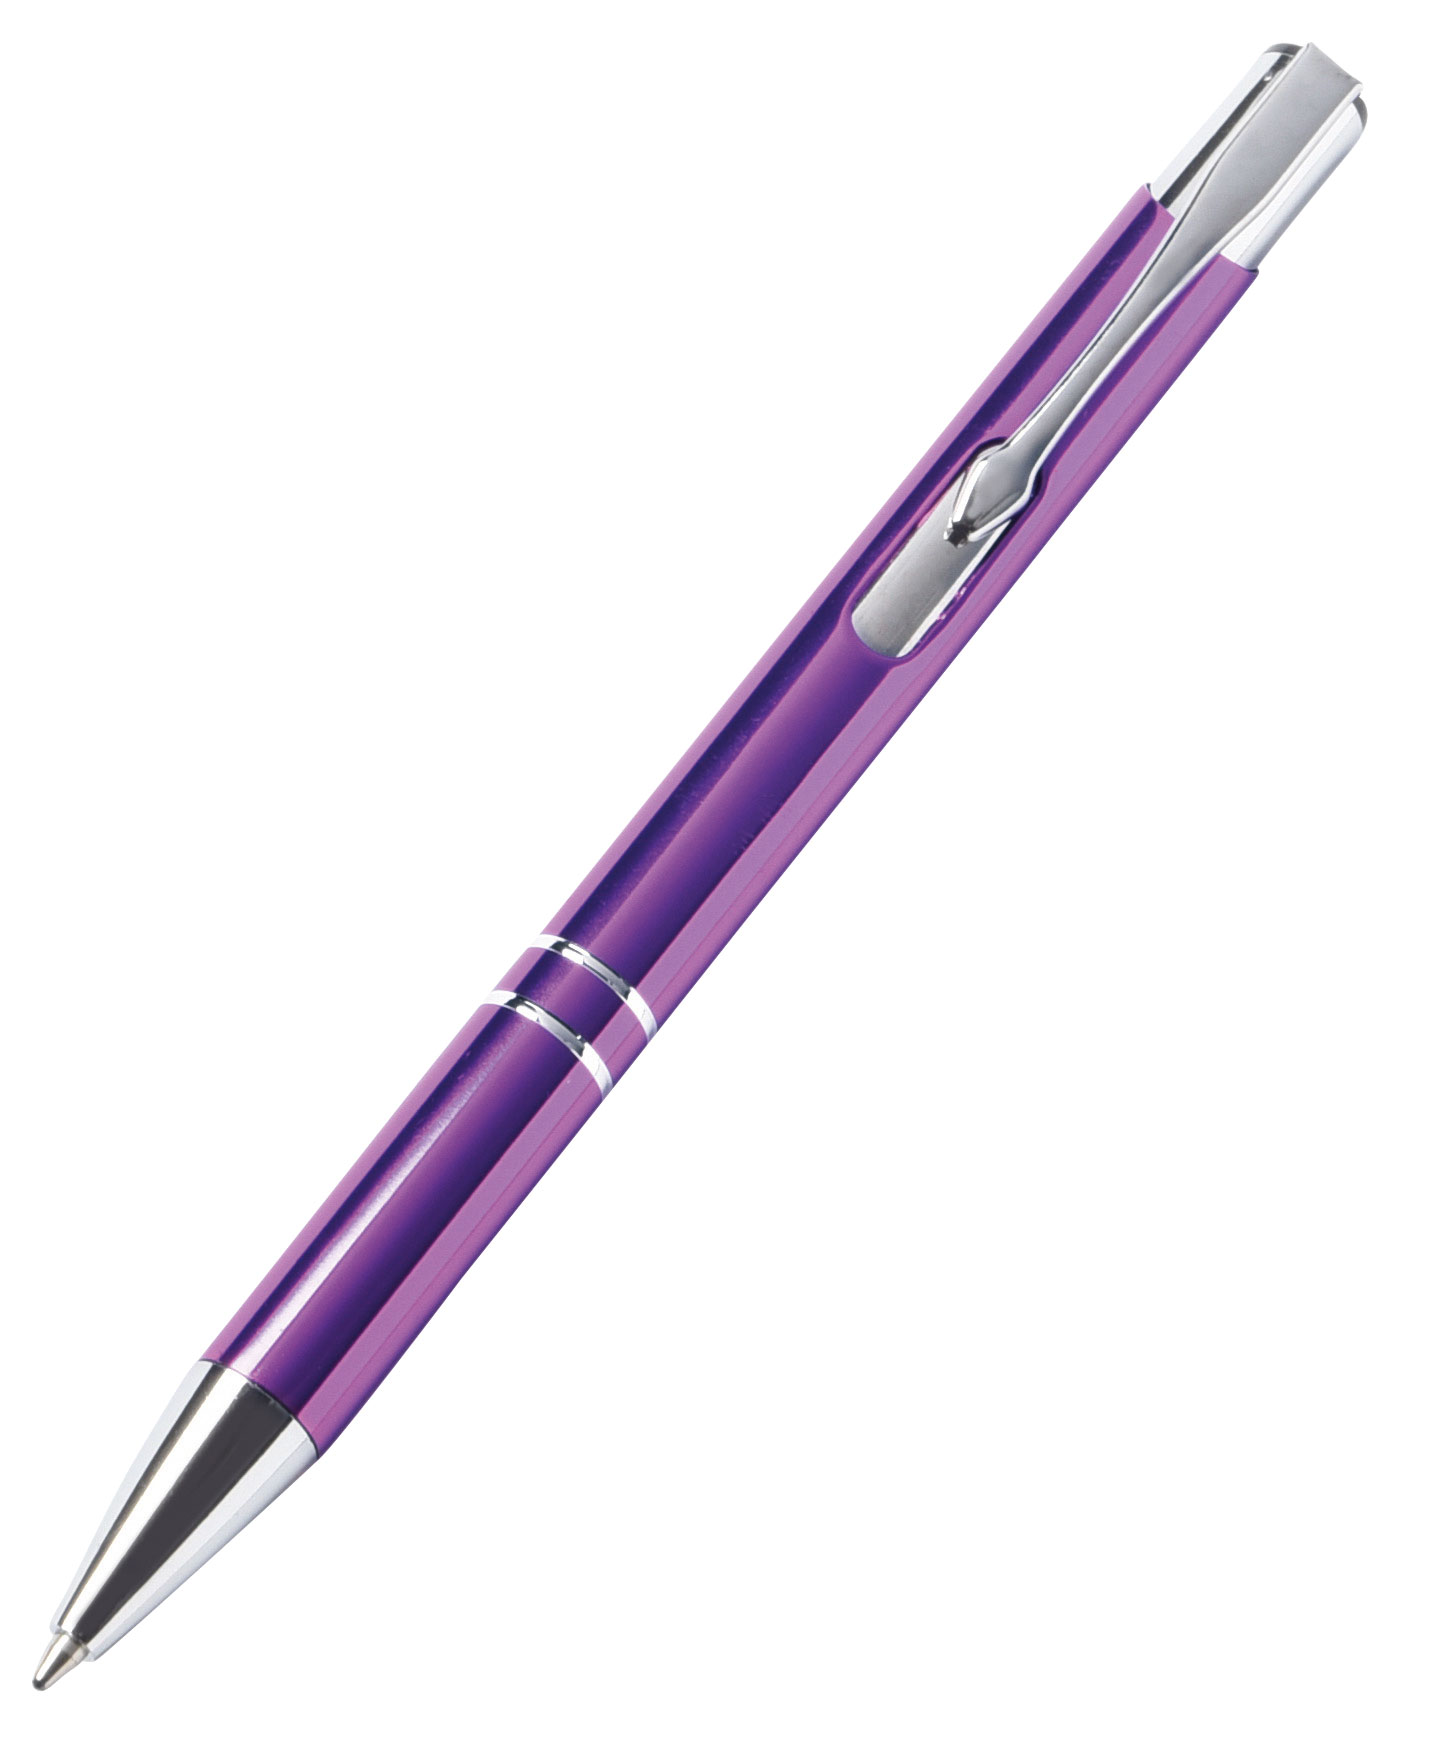 Hliníkové kuličkové pero TUCSON: lesklé kovové tělo a klip, velkokapacitní náplň s modrým inkoustem, cvakací mechanismus  - fialová - foto